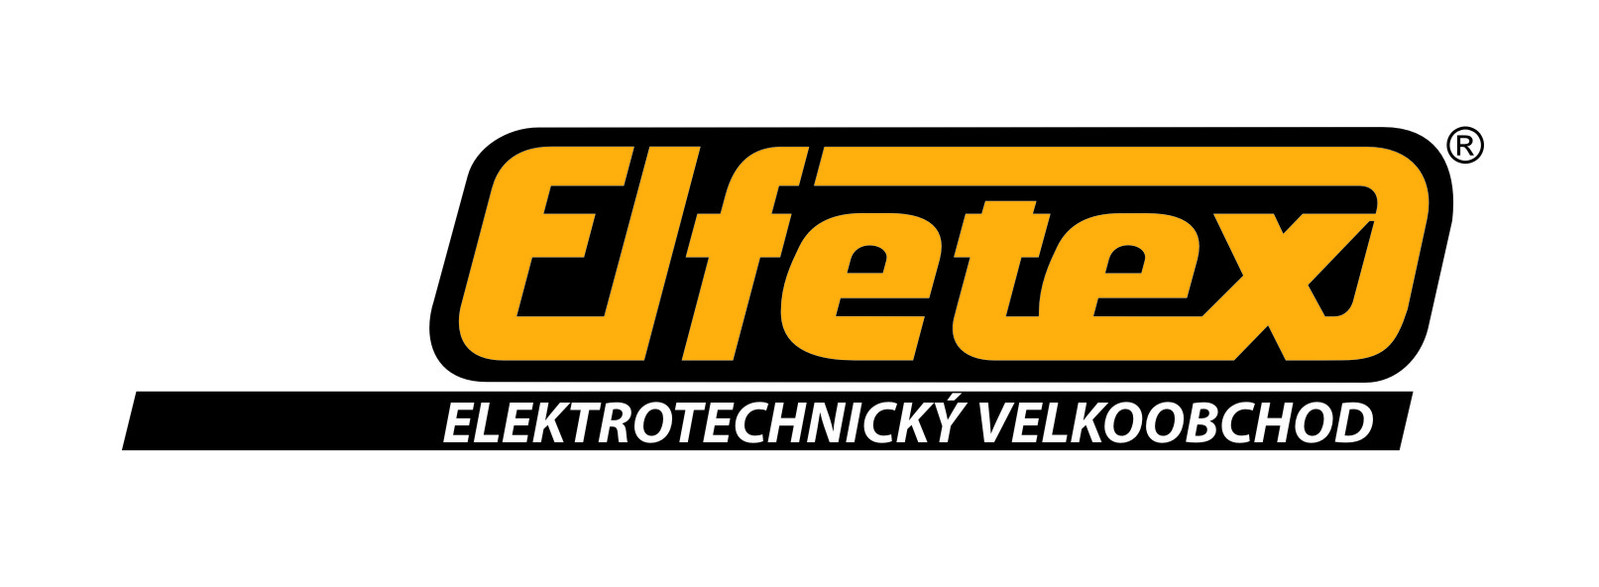 elfetex-logo-2011.jpg